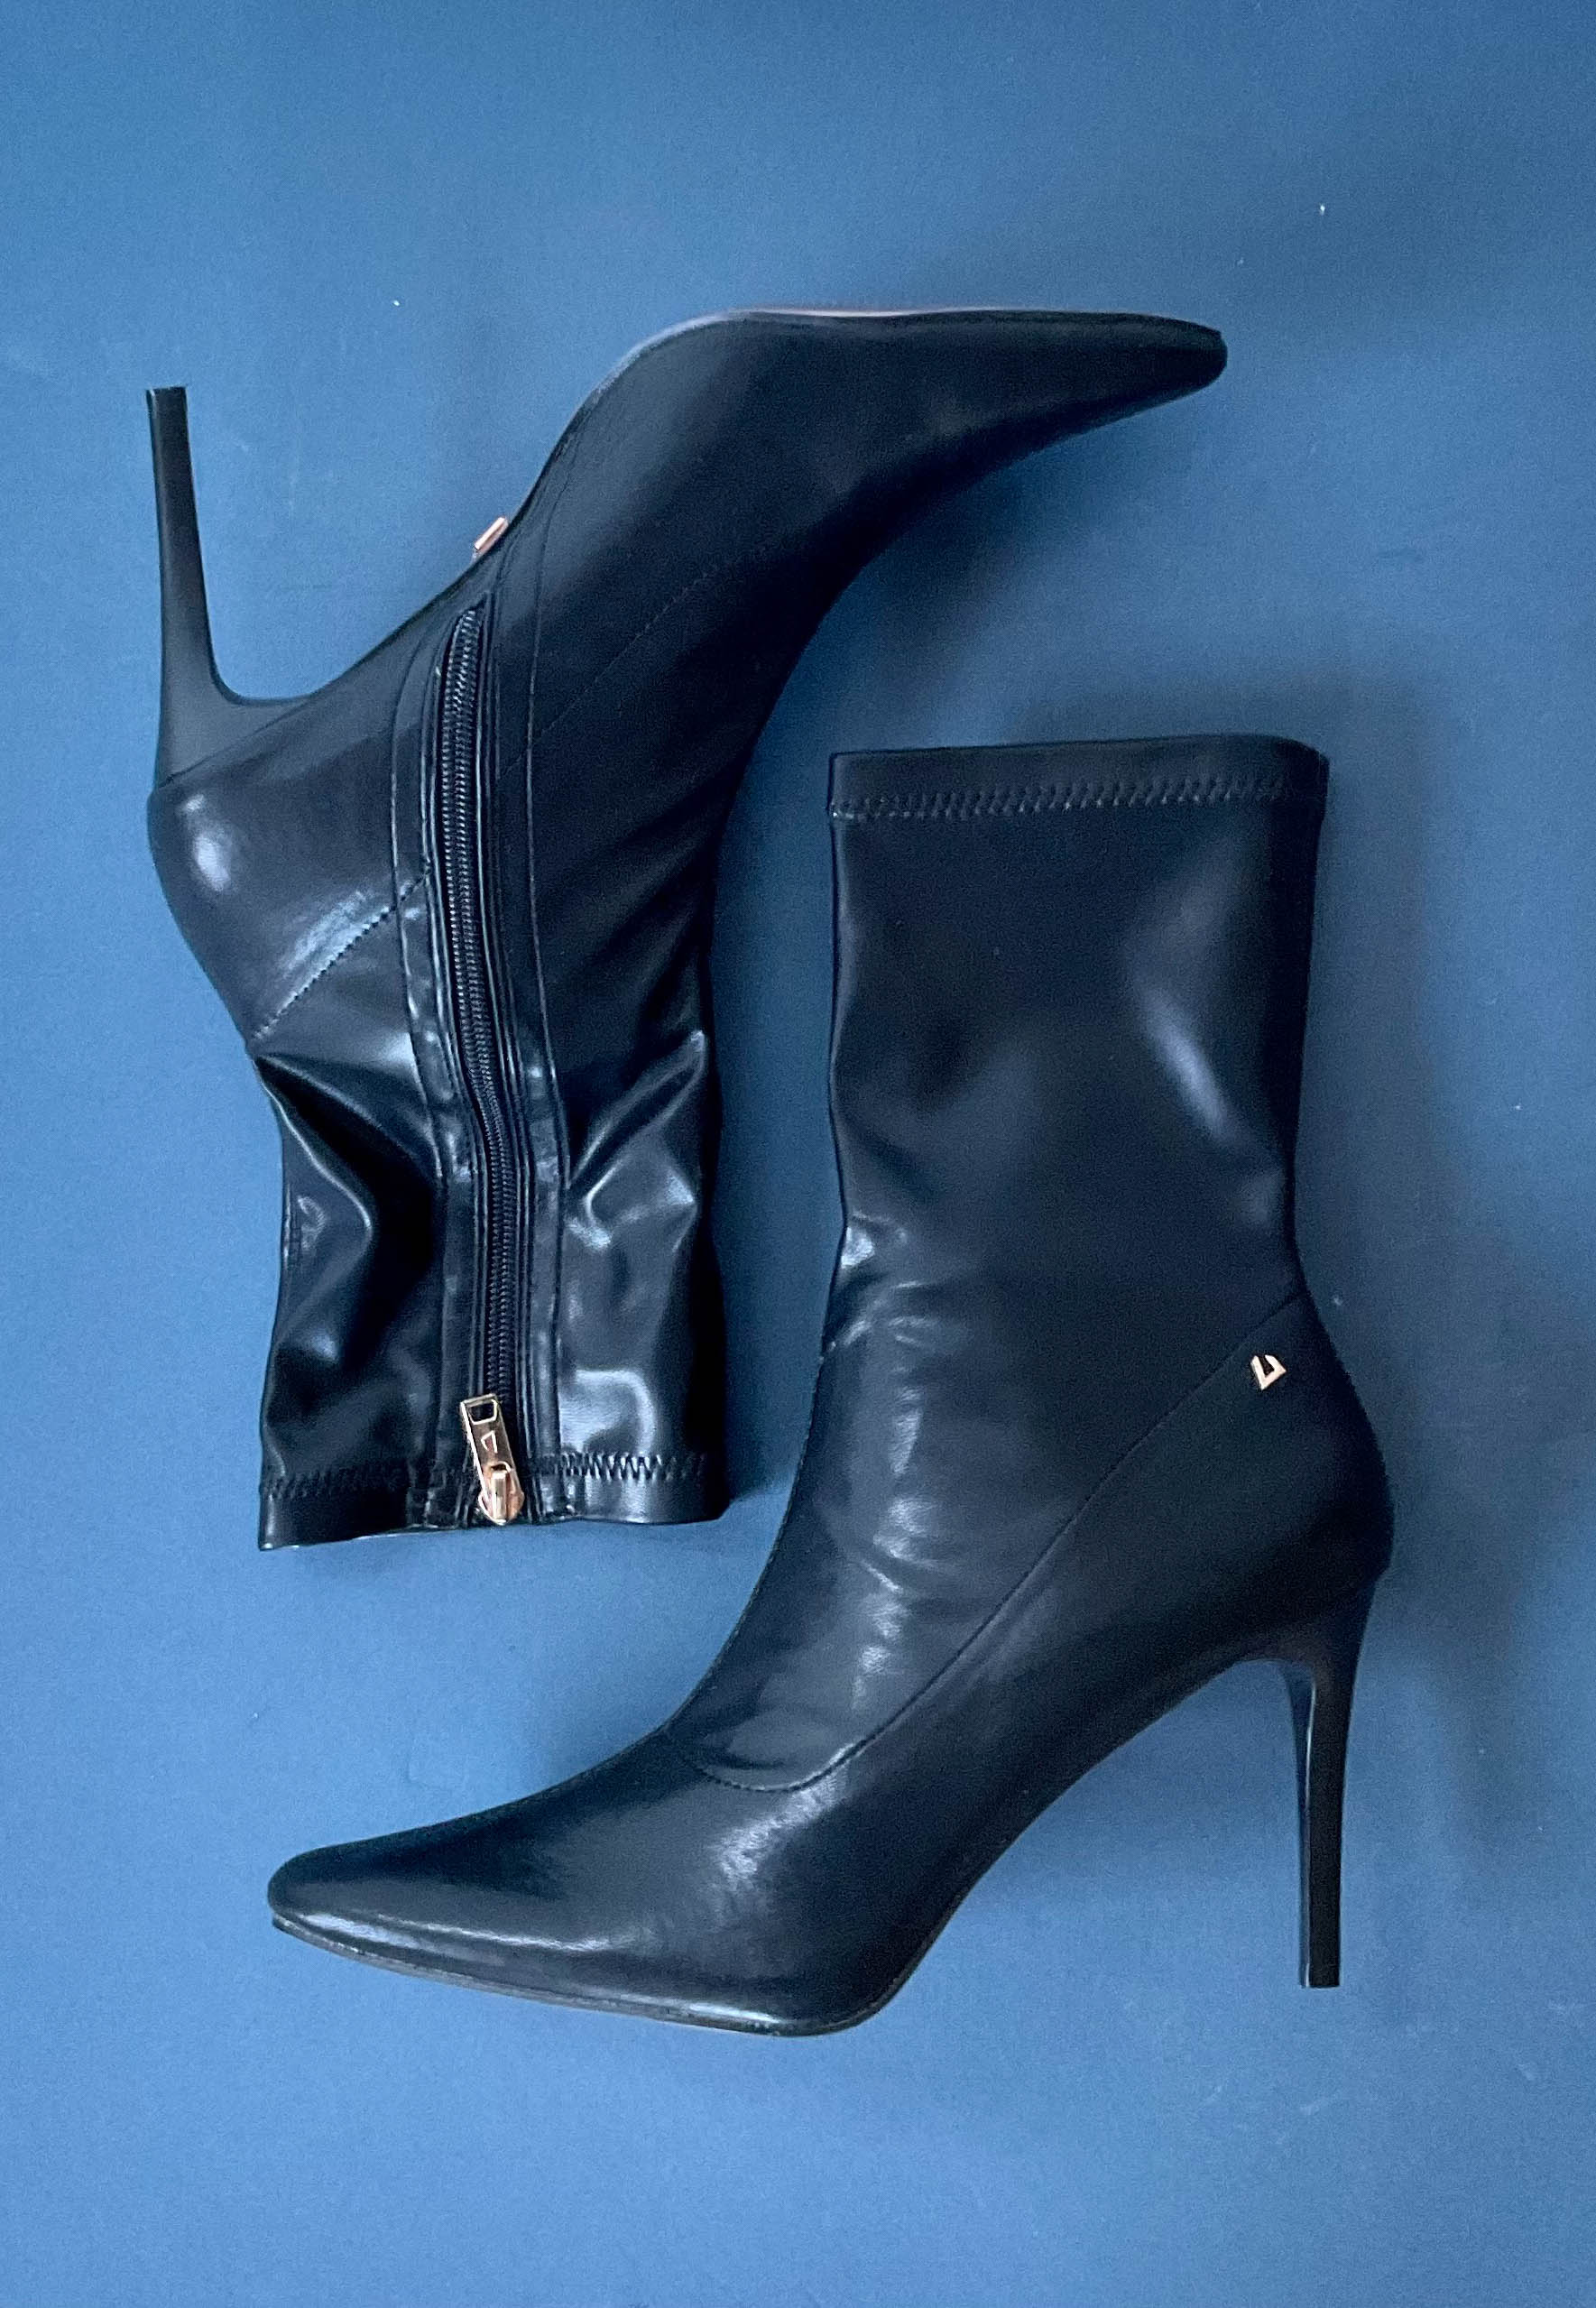 Una healy black high heel boots